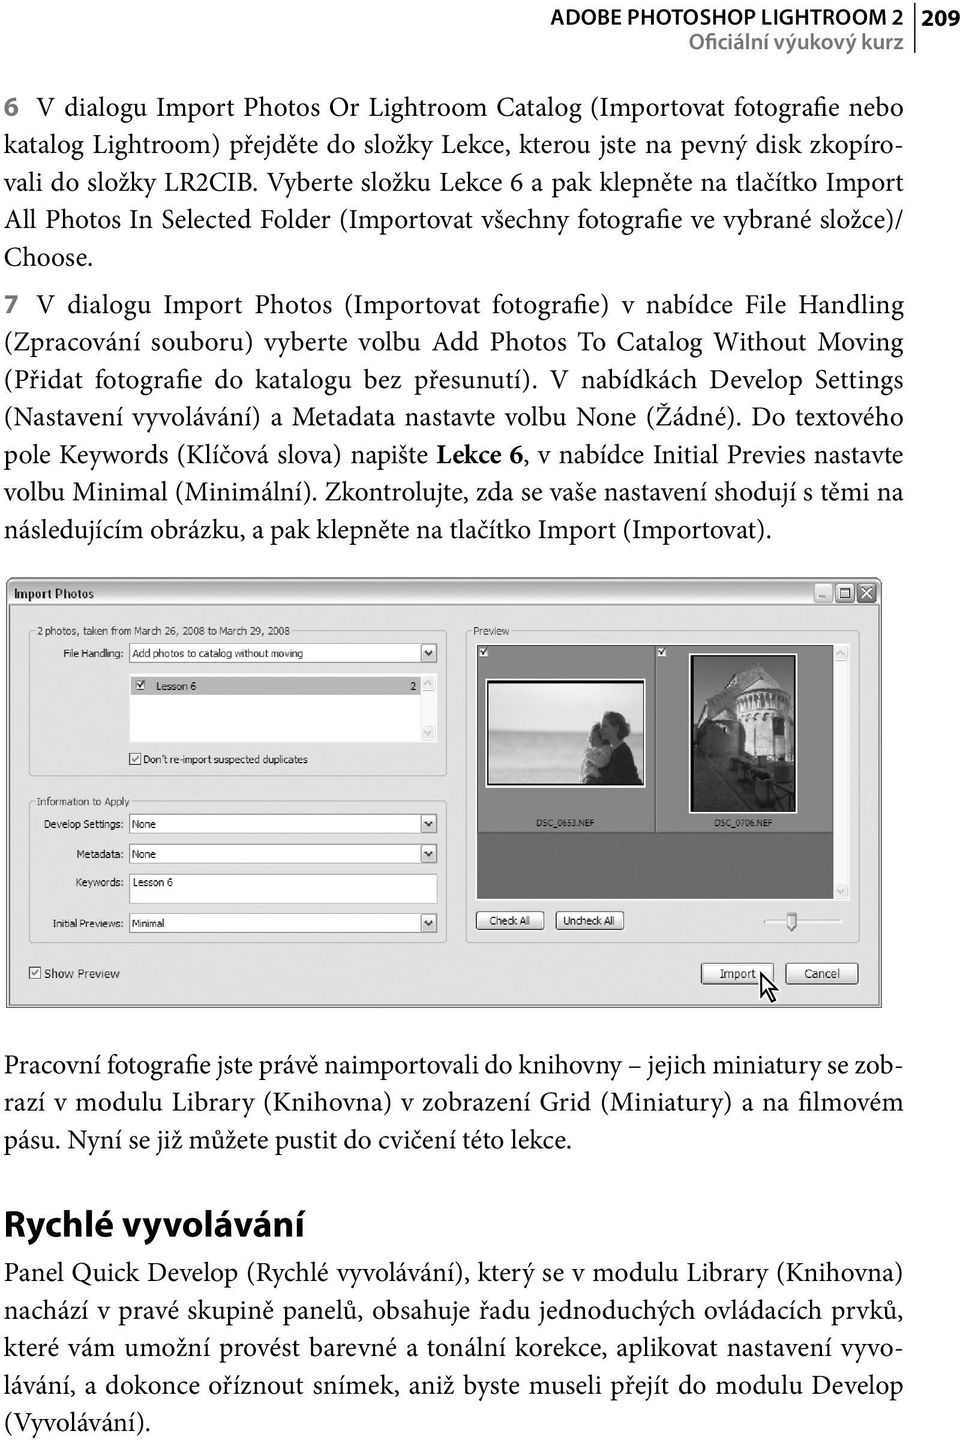 7 V dialogu Import Photos (Importovat fotografie) v nabídce File Handling (Zpracování souboru) vyberte volbu Add Photos To Catalog Without Moving (Přidat fotografie do katalogu bez přesunutí).